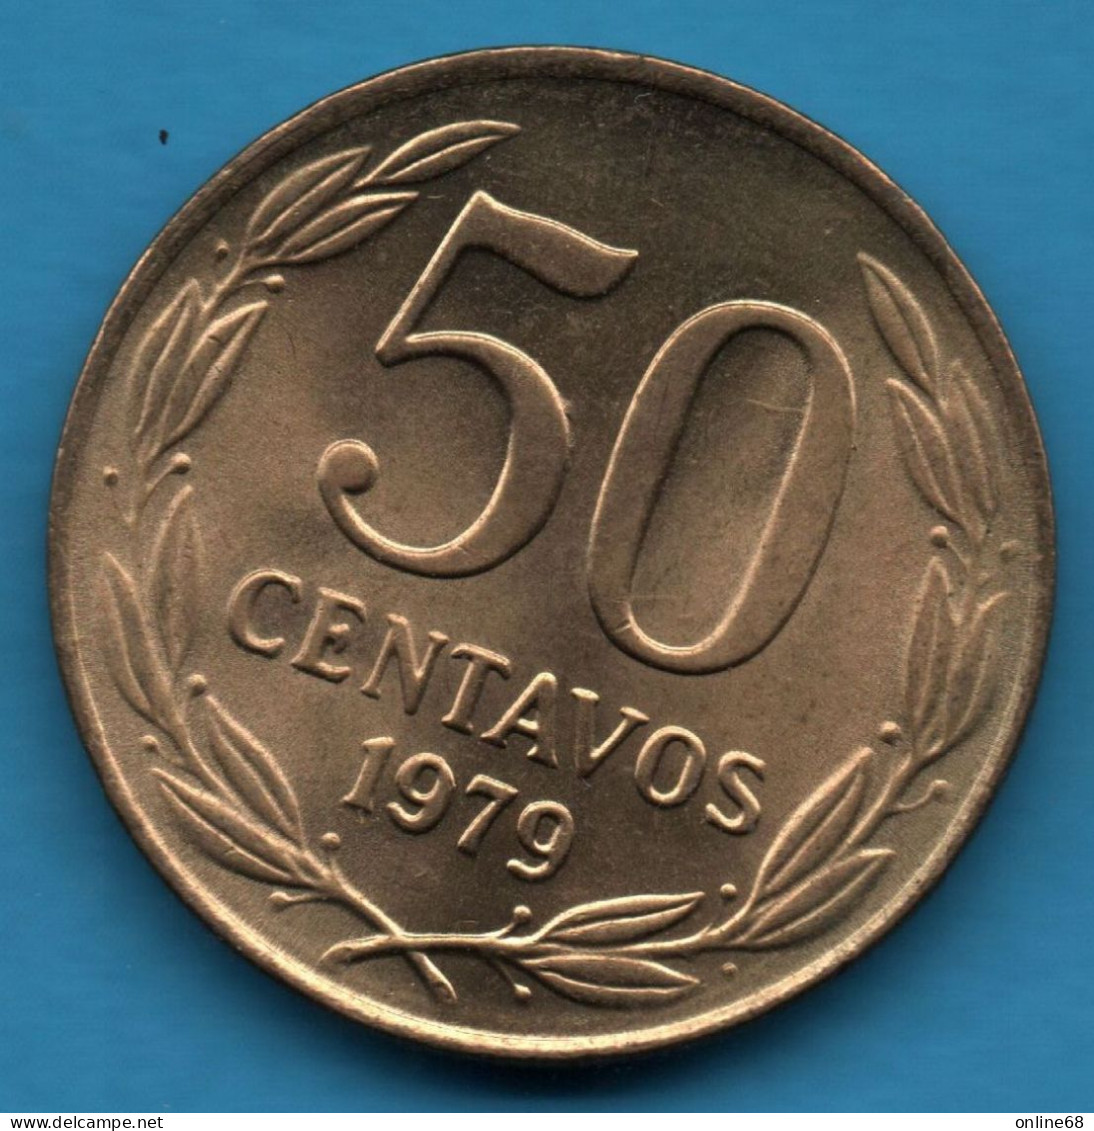 CHILE 50 CENTAVOS 1979 KM# 206a CONDOR - Chile